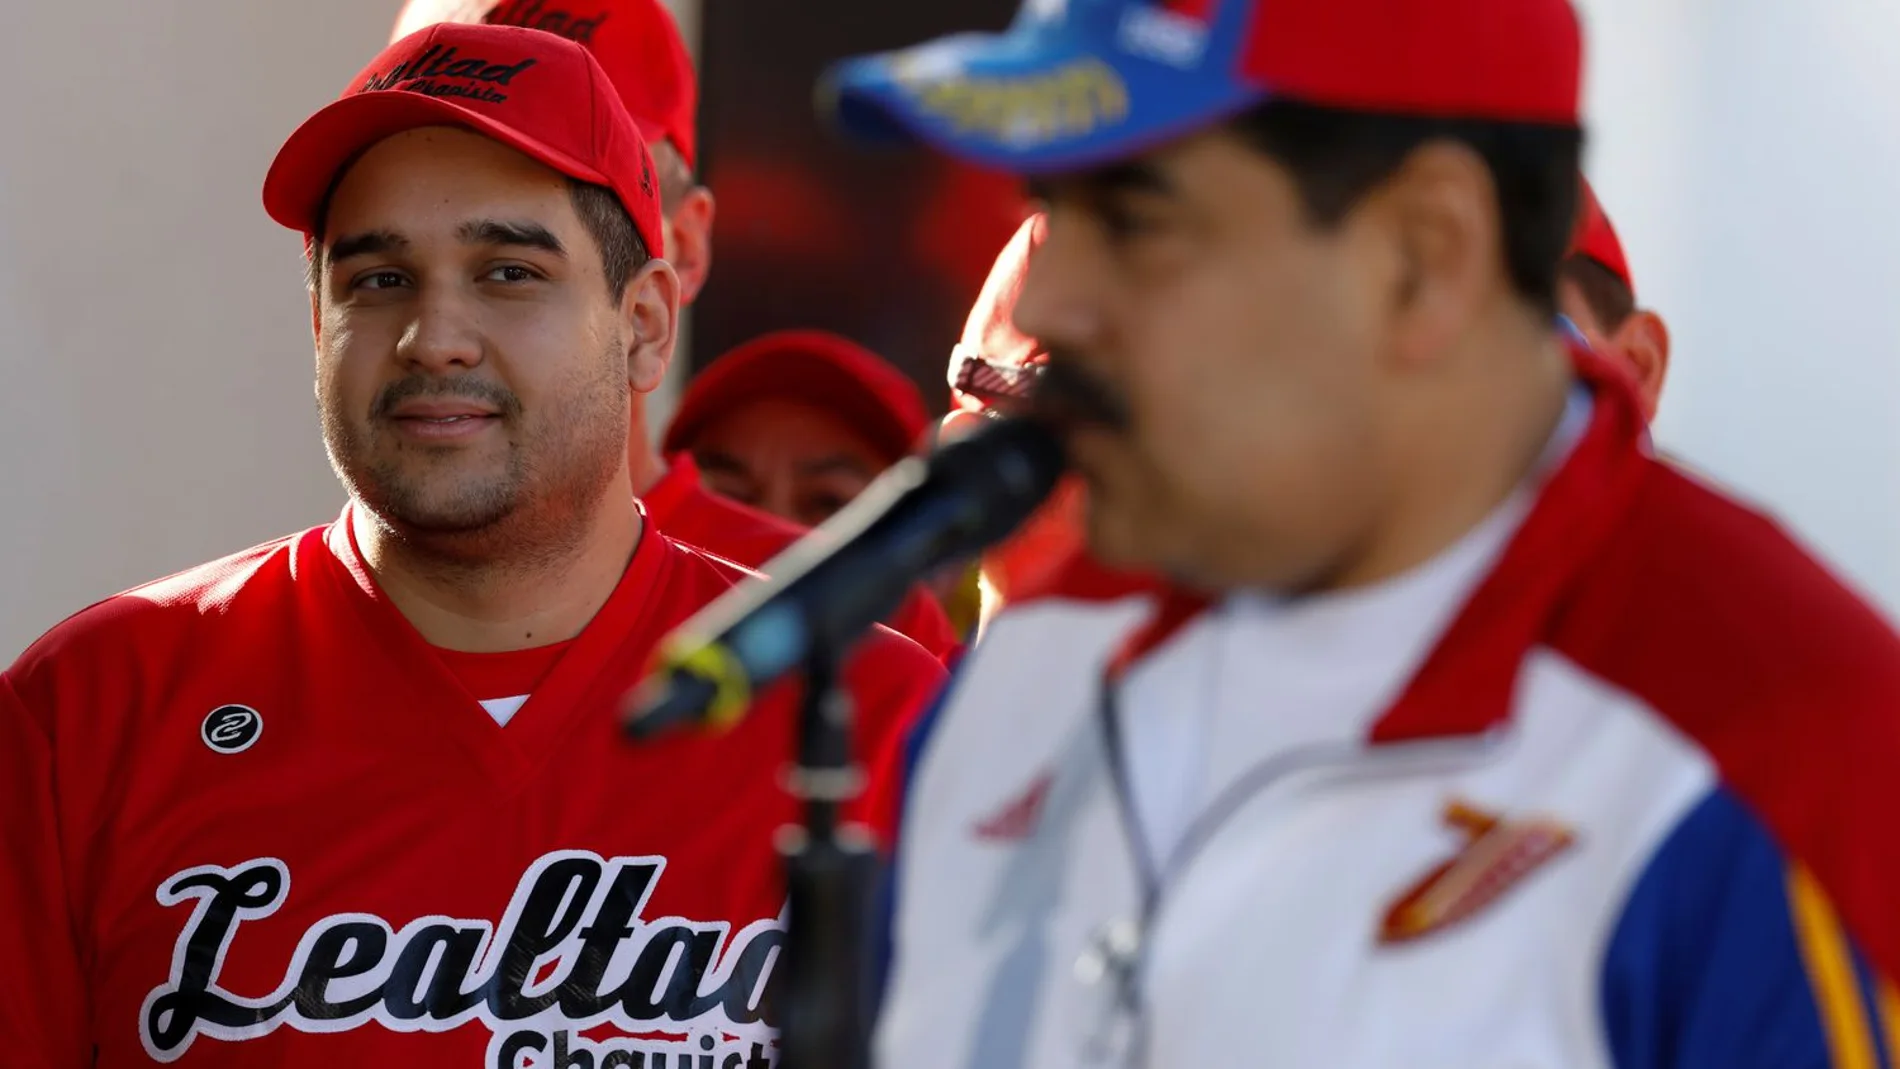 No todo son fiestas para Nicolás Maduro, desde los 23 años ocupa puestos políticos «a la carta»